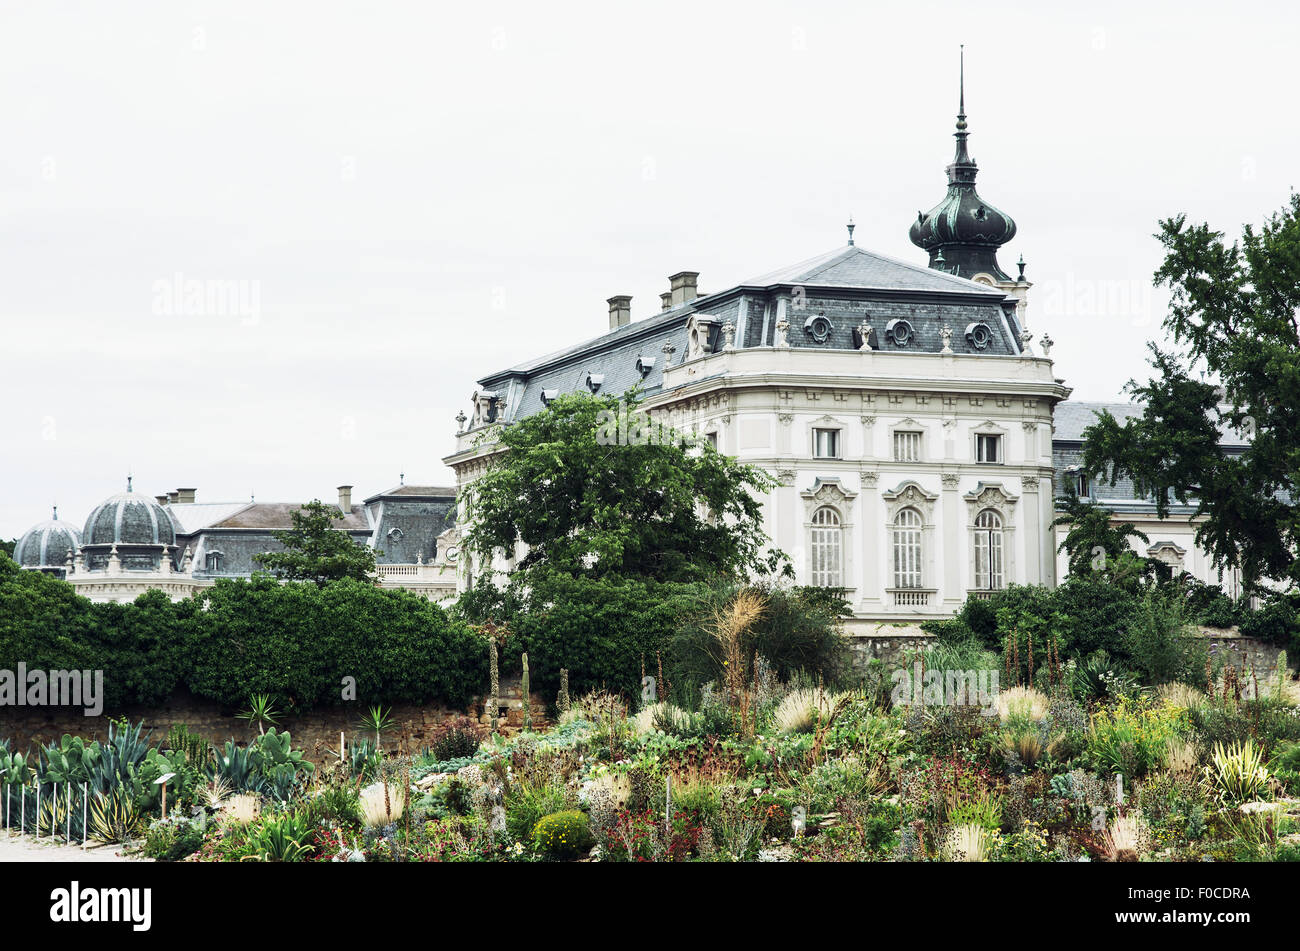 Festetics palace, Keszthely, Zala county, Hungary. Castle and gardens. Stock Photo